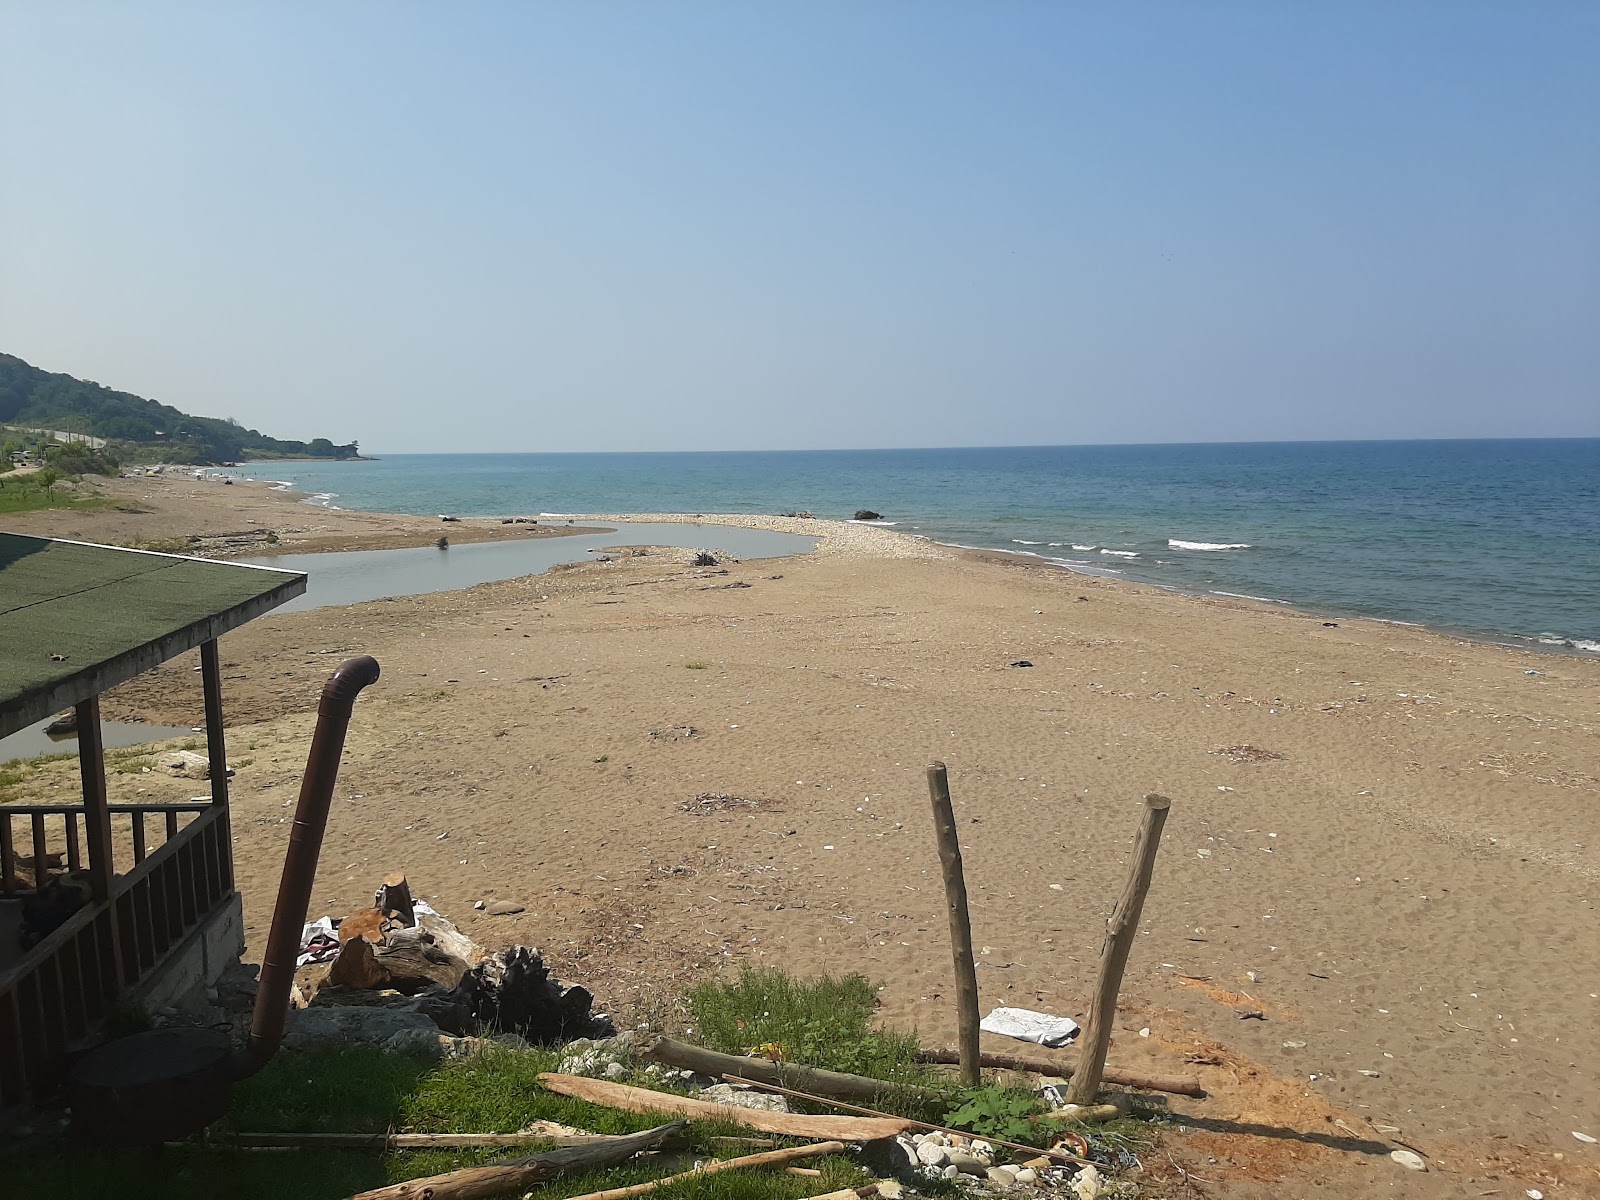 Akcakoca Plaji'in fotoğrafı parlak kum yüzey ile